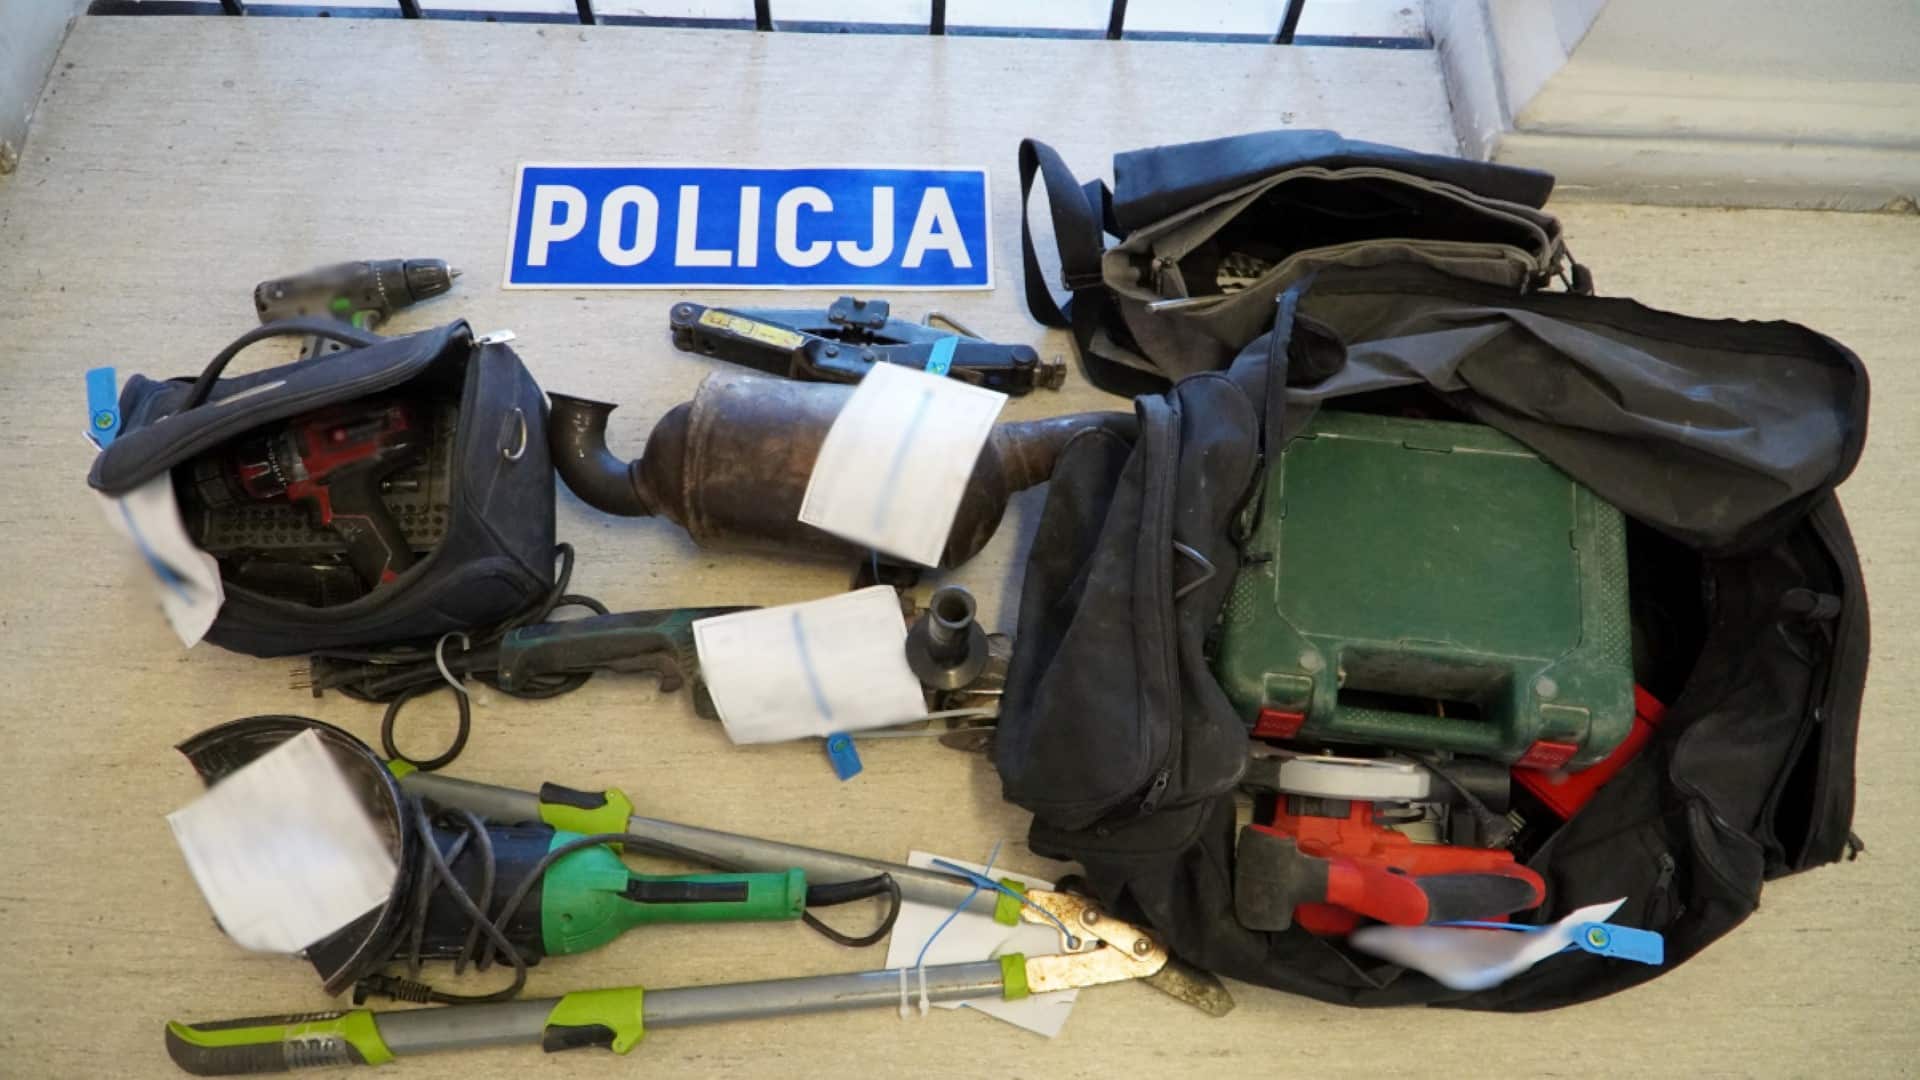 Olsztyńska policja zakończyła serię włamań i kradzieży. Odkryto przerażające szczegóły kradzież Olsztyn, Wiadomości